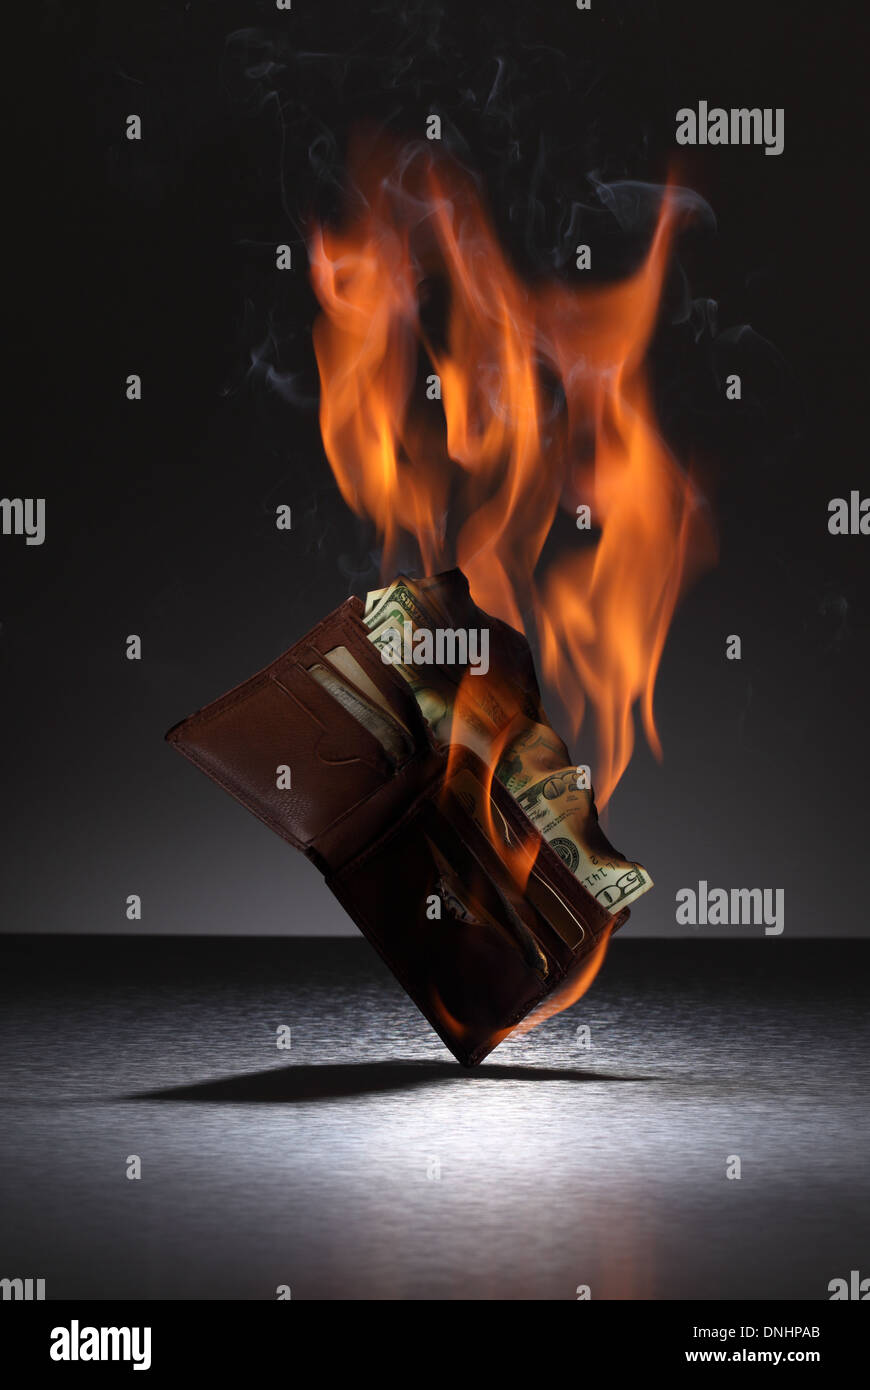 Una cartera de cuero marrón llena de tarjetas de crédito y dinero en fuego. Foto de stock